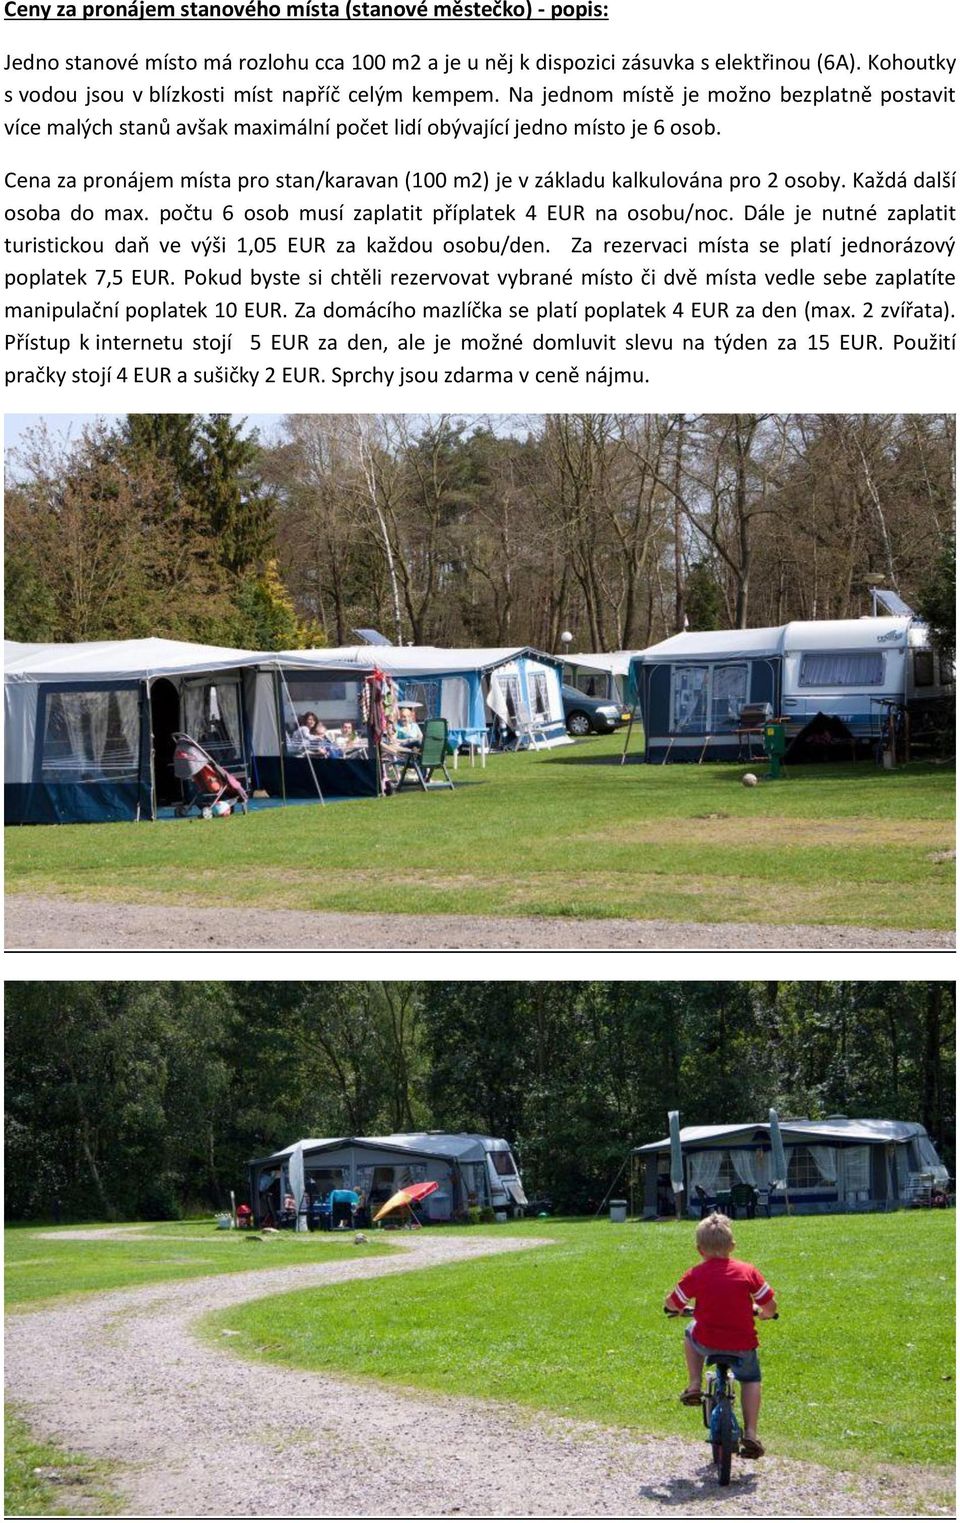 Cena za pronájem místa pro stan/karavan (100 m2) je v základu kalkulována pro 2 osoby. Každá další osoba do max. počtu 6 osob musí zaplatit příplatek 4 EUR na osobu/noc.